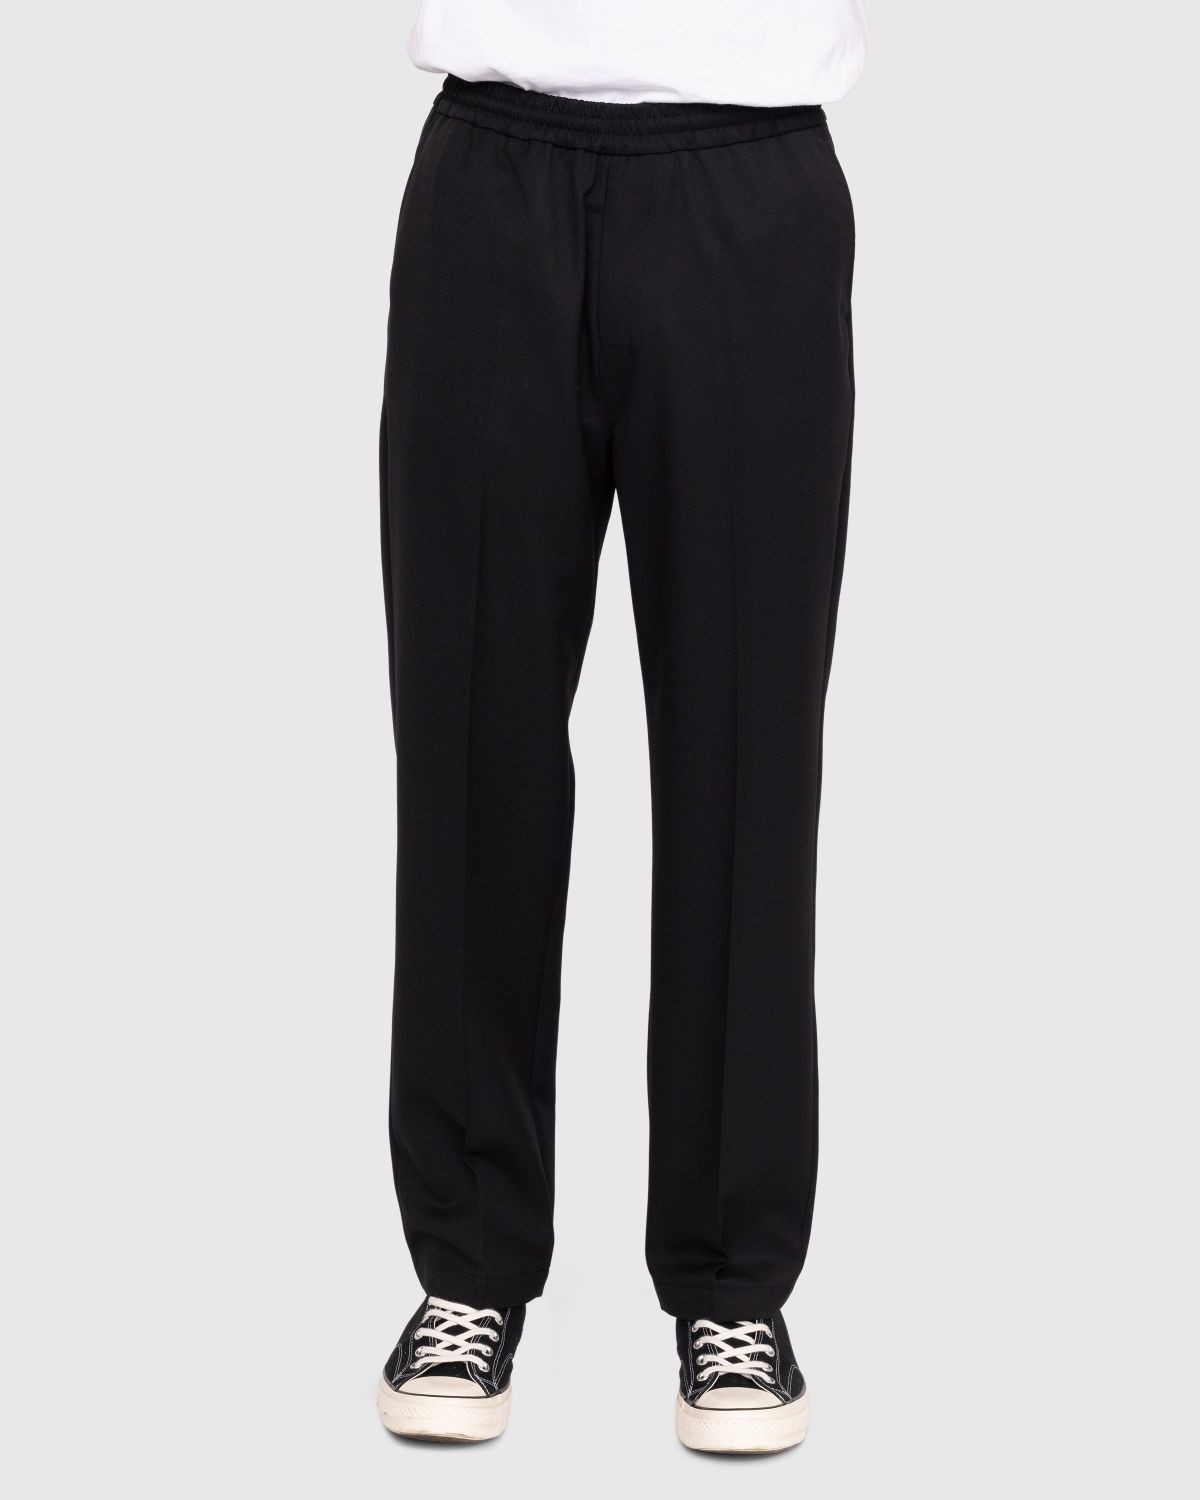 Highsnobiety – Wool Blend Elastic Pants Black - Pants - Black - Image 2